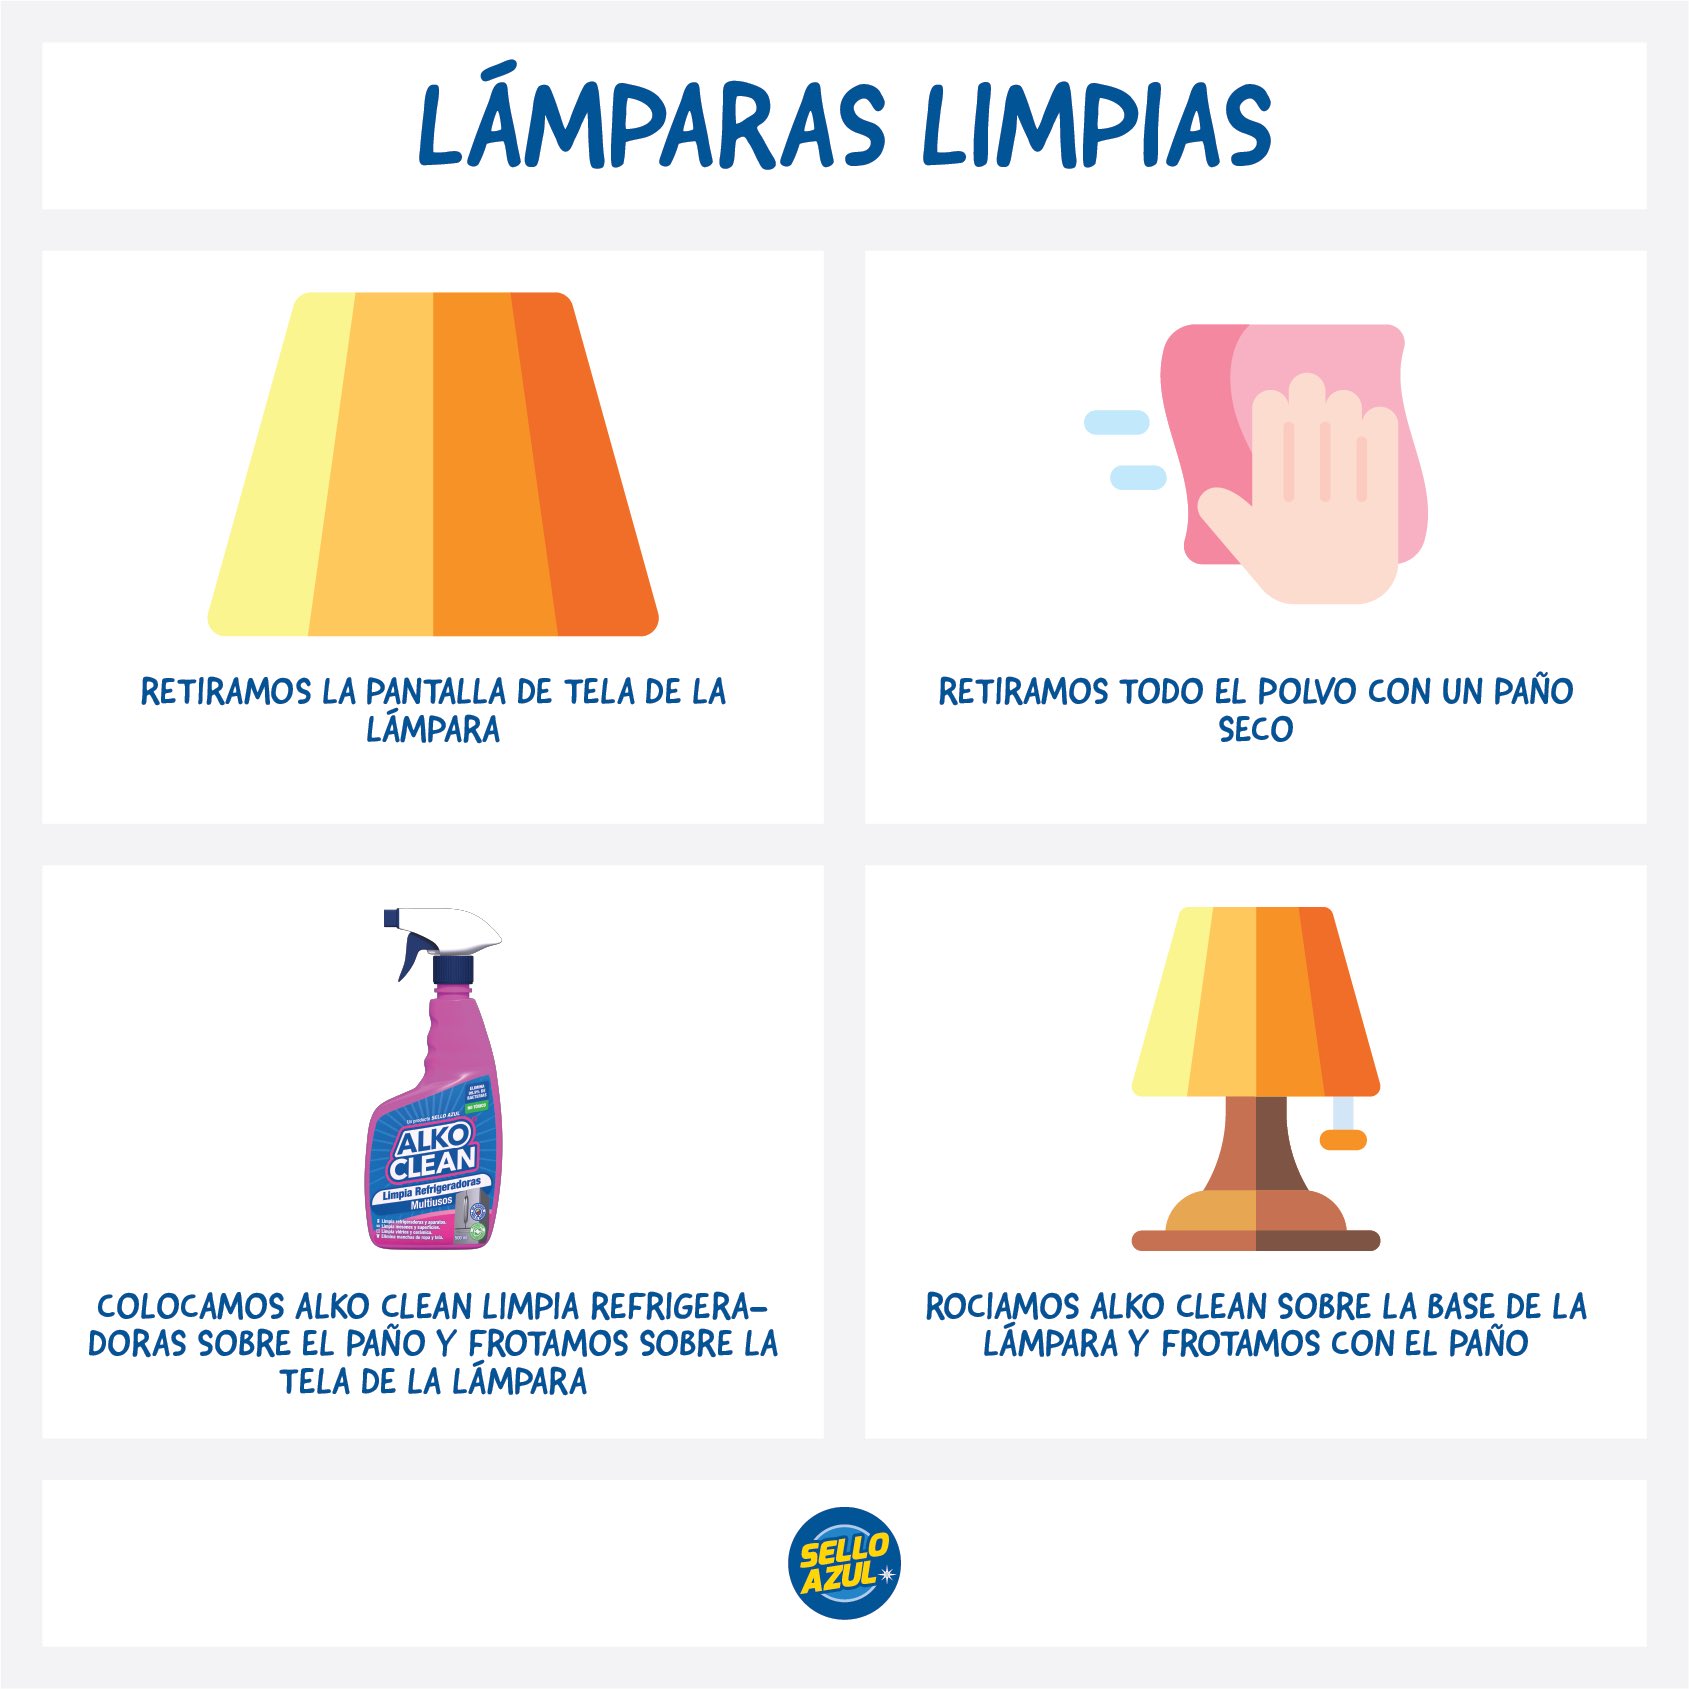 Sello Azul on Twitter: "Cómo Limpiar LÁMPARAS TELA 🧽🧼 Deja tus lámparas brillando. 👌 para más tips y recetas! ☝️ #lamparas #tela #aseo # limpieza #hogar #ecuador https://t.co/3YHhu1YiW0" / Twitter